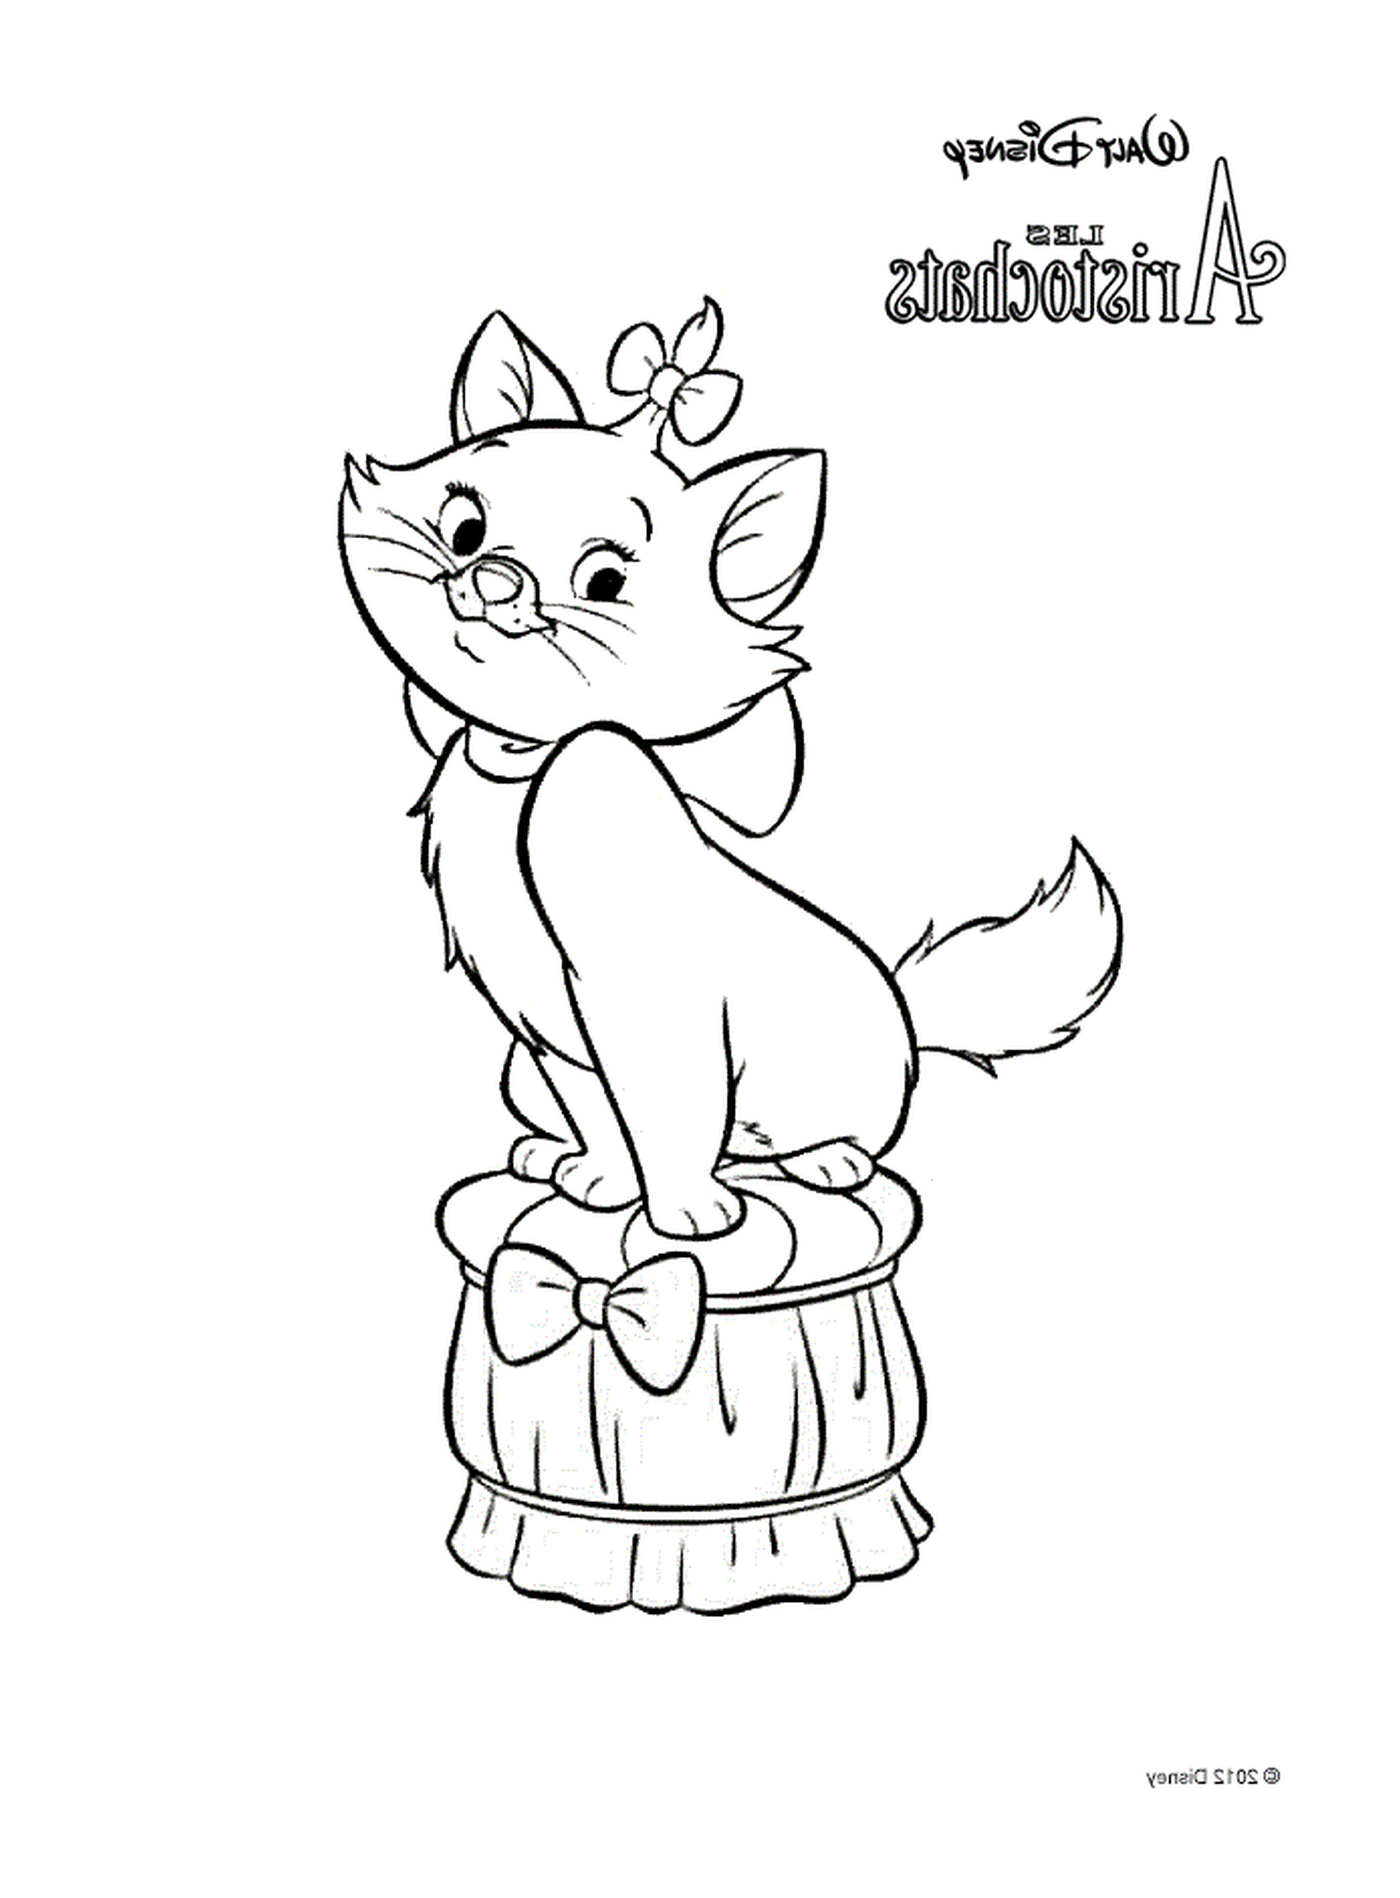  Marie, la gata de Aristochats de Disney, sentada en un barril 